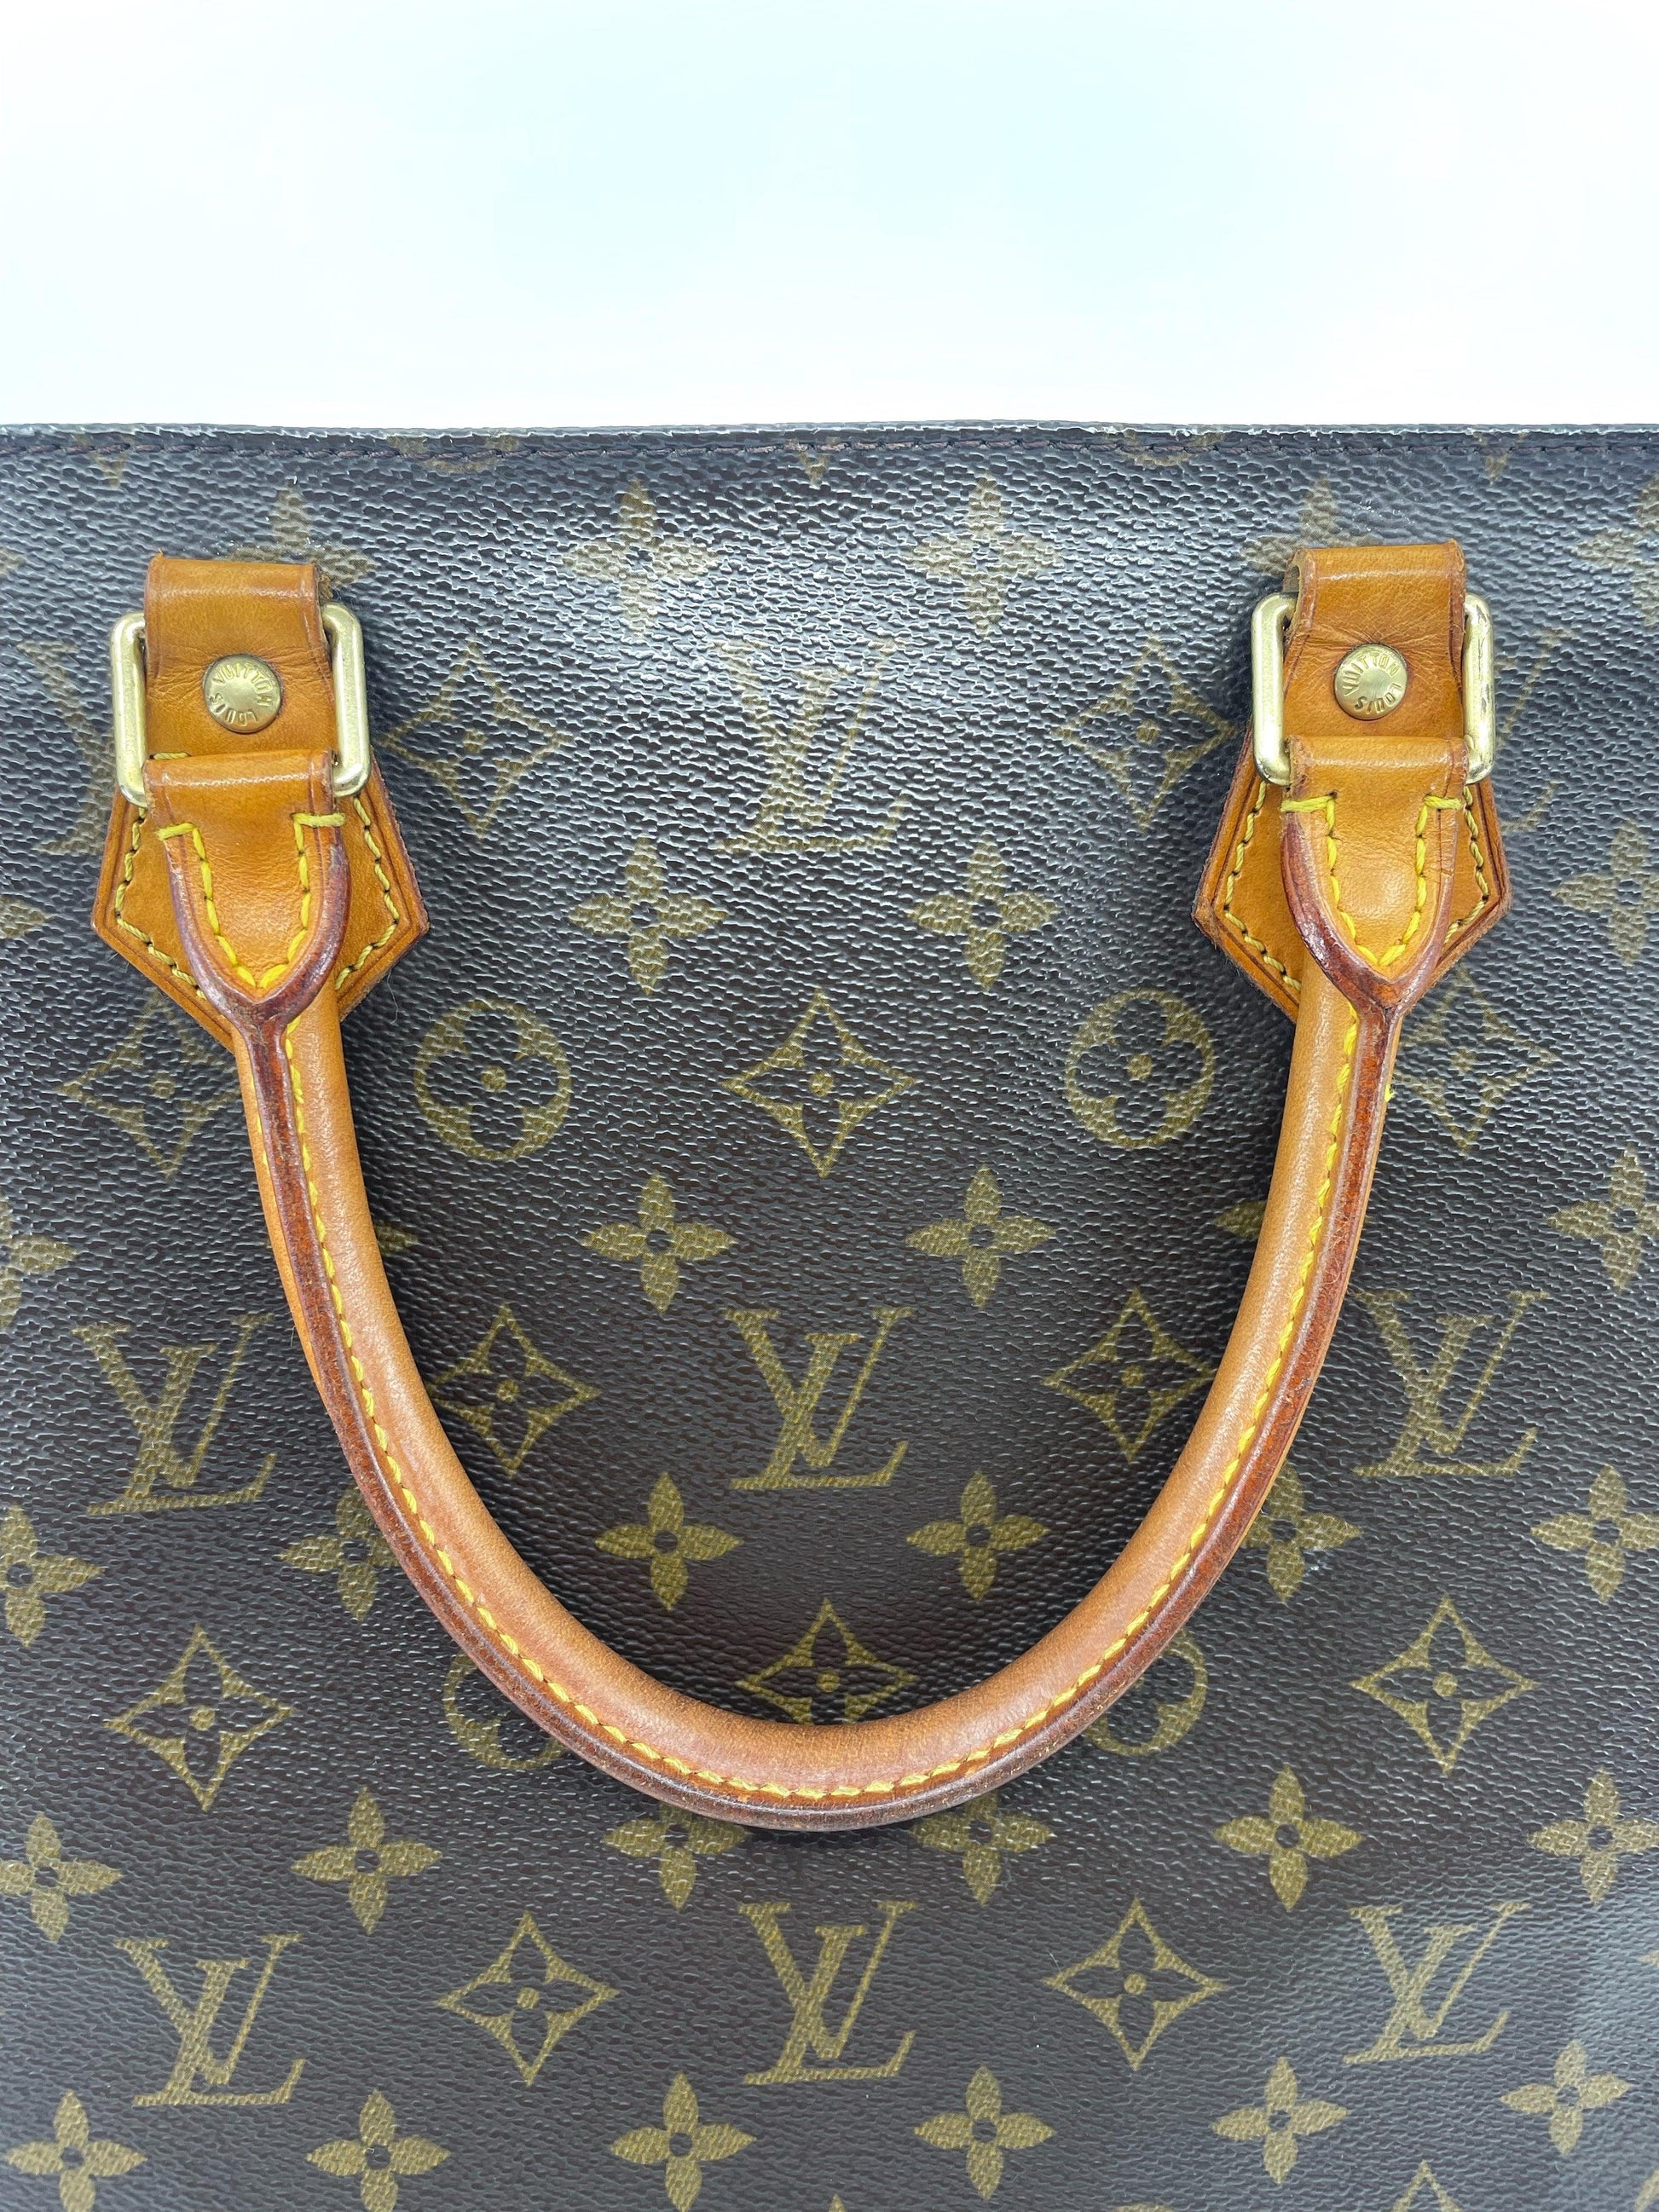 Louis Vuitton Vintage Monogram Coated Canvas Sac Plat Hand Bag Top